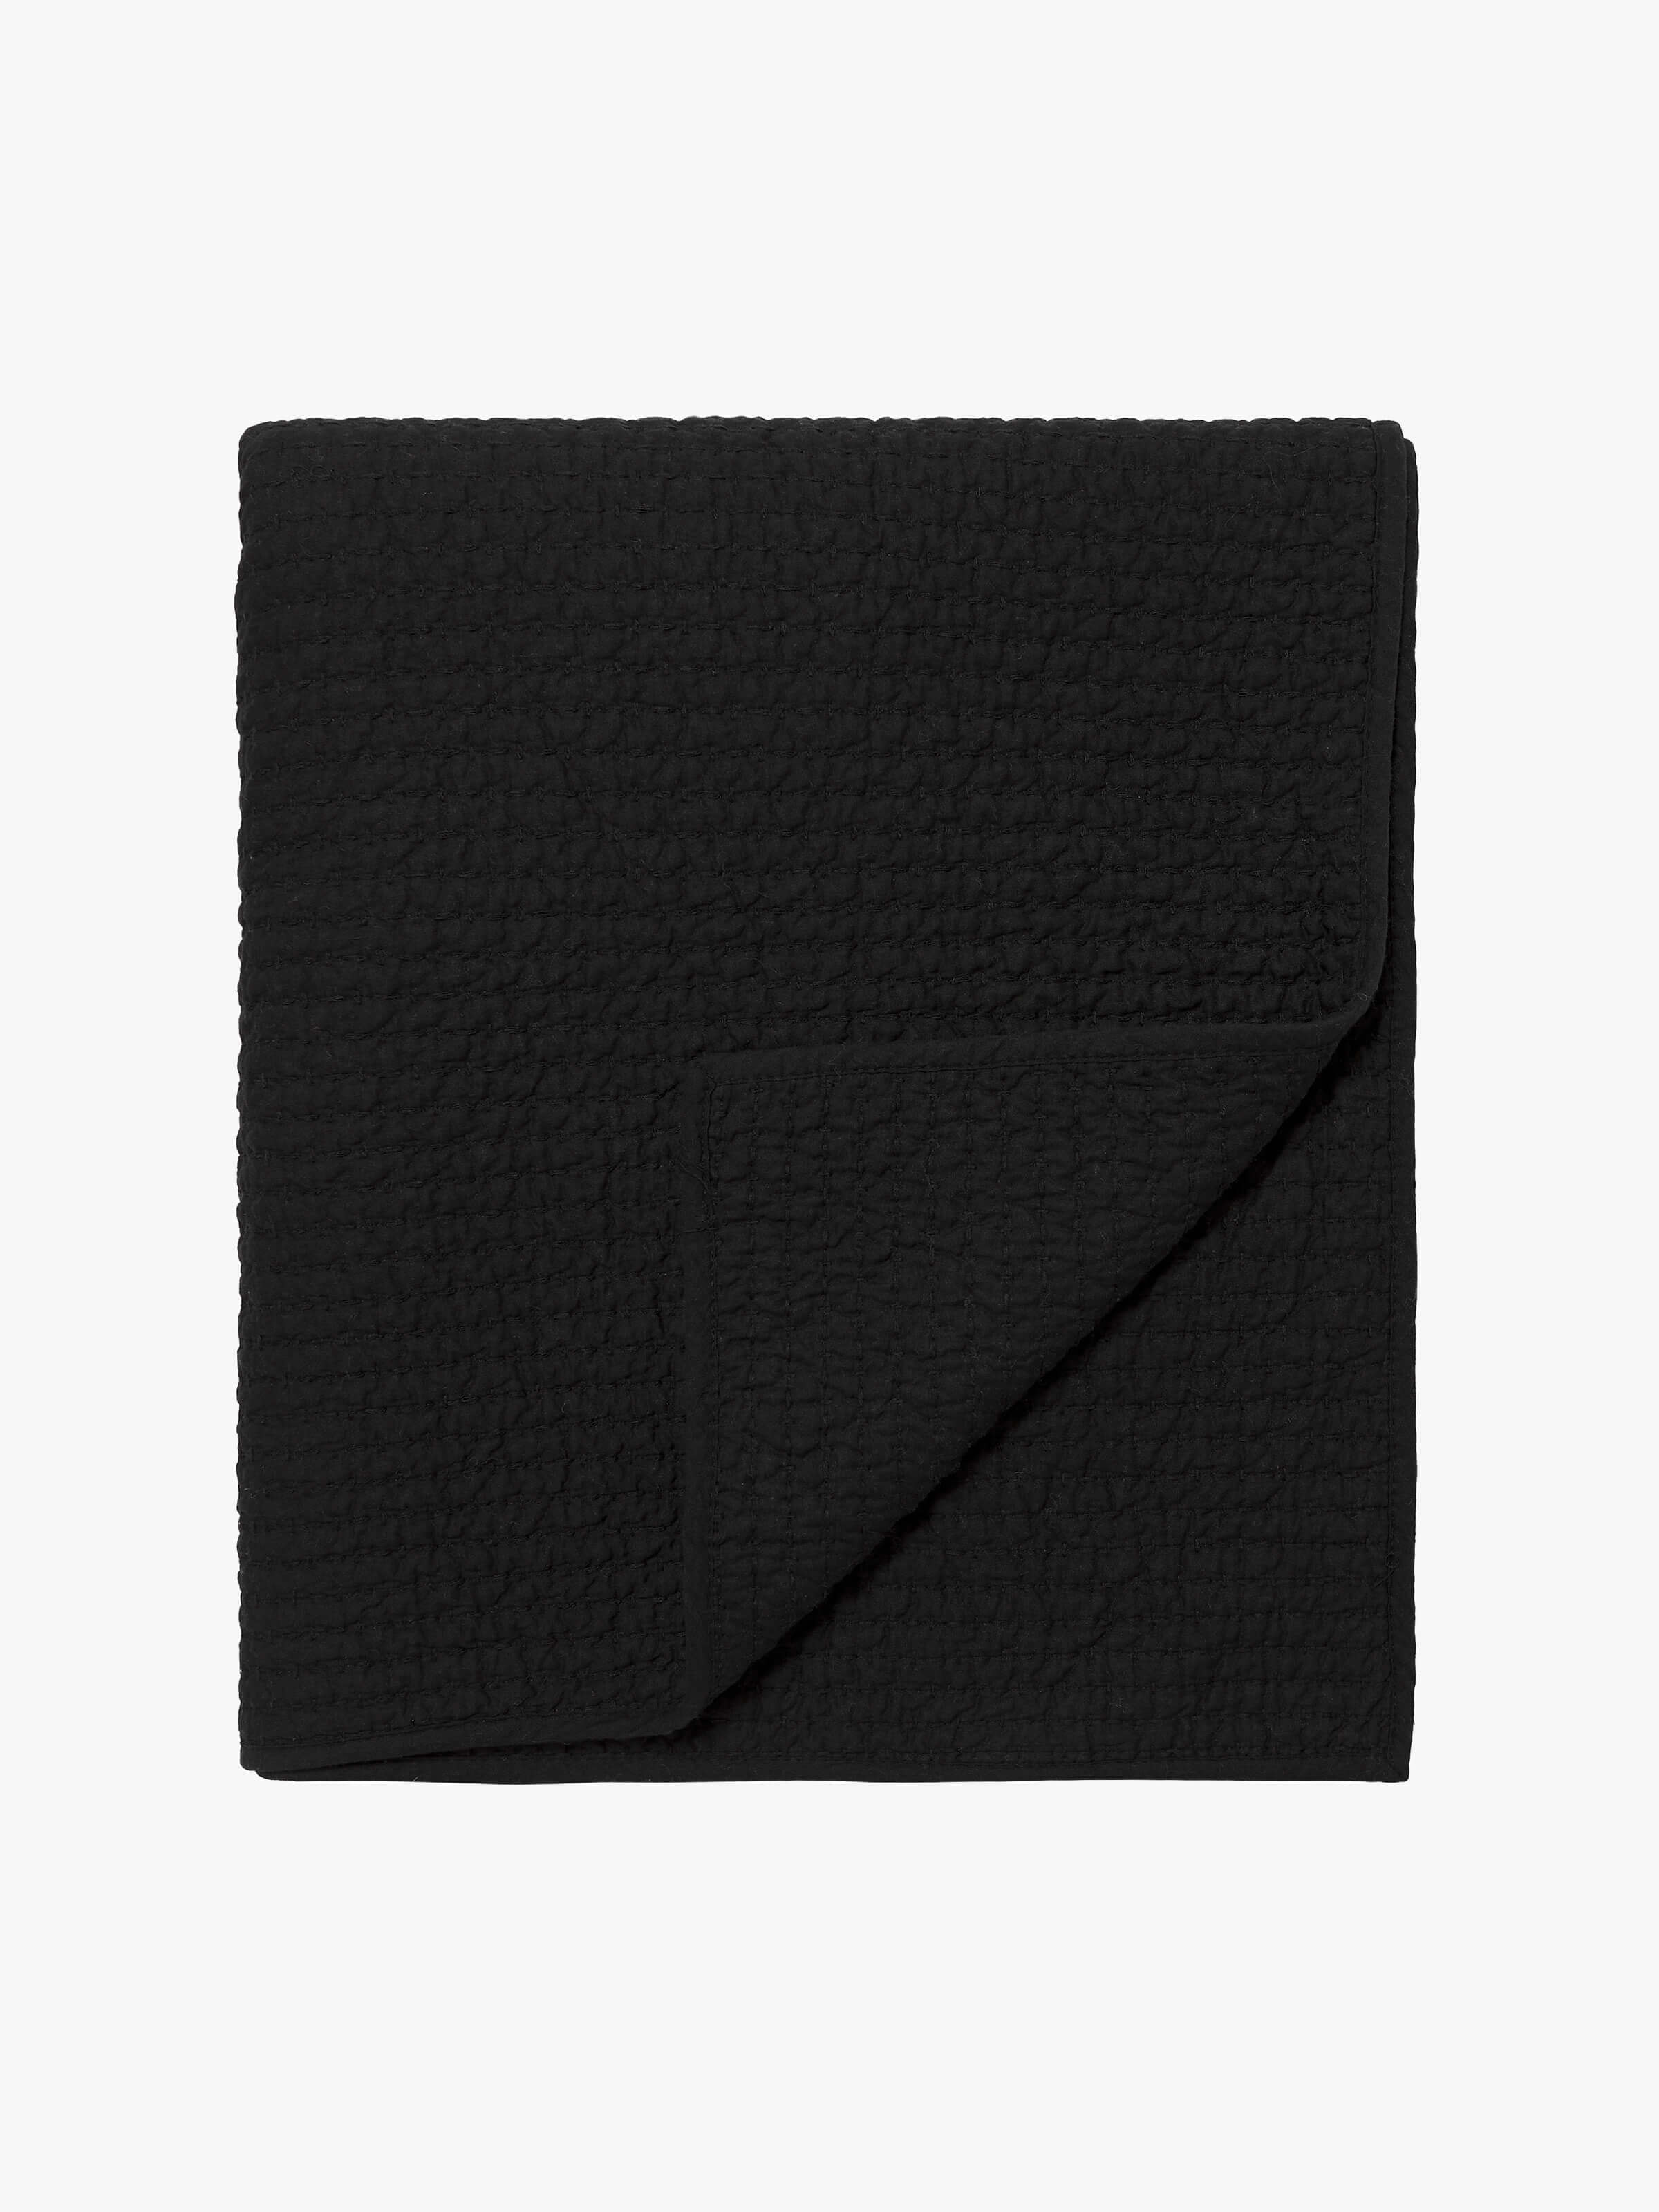 Aspen Black Pure Cotton Quilt